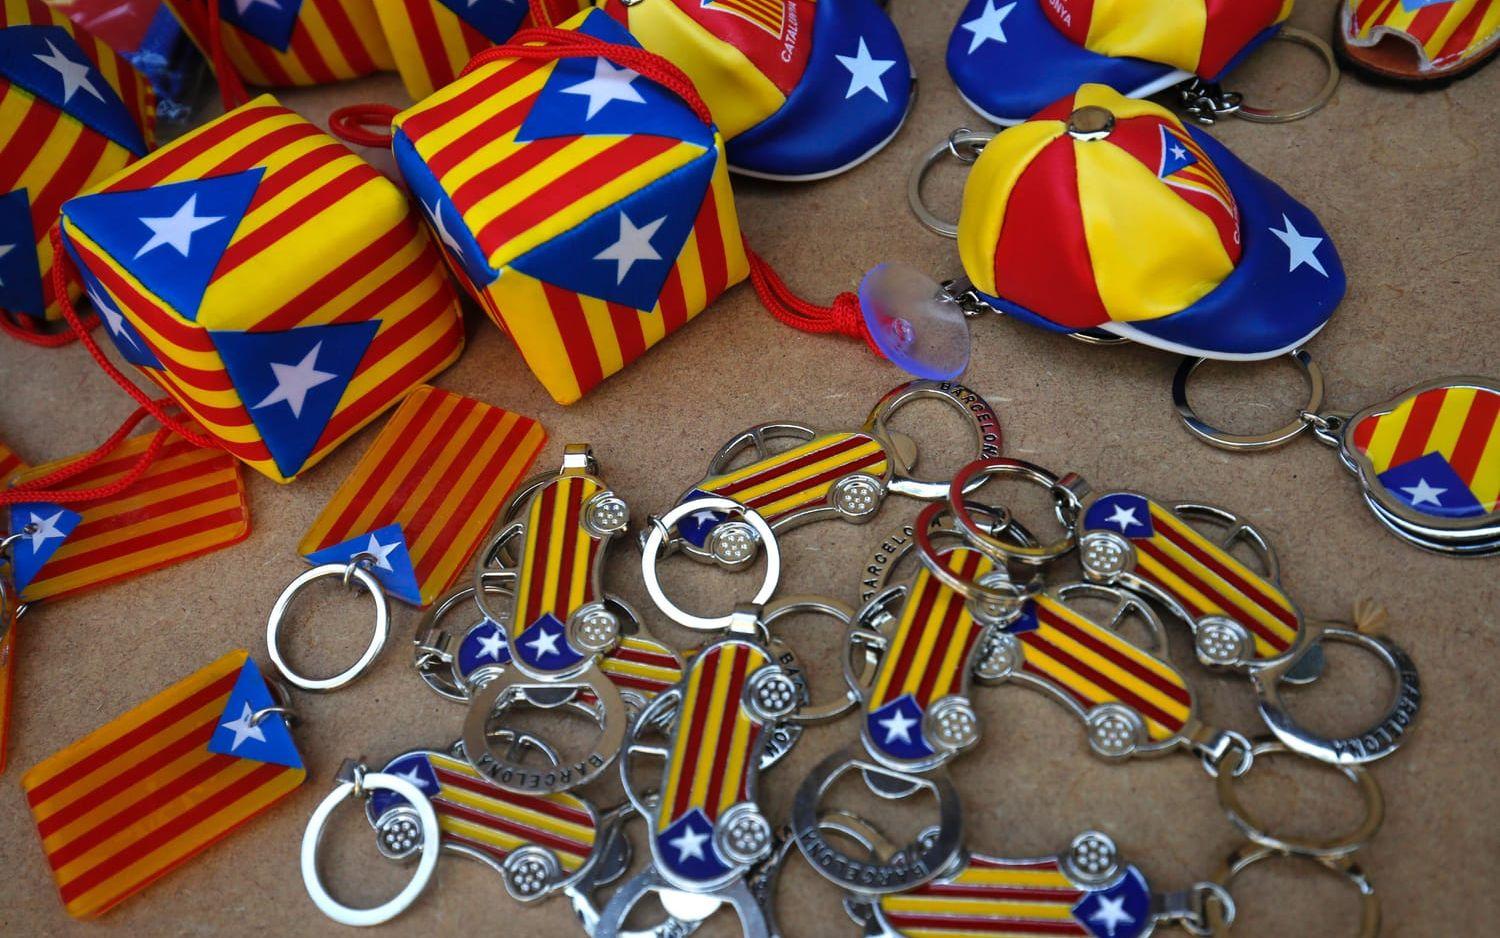 Fiffiga försäljare tog också chansen att sälja pryar i den katalanska flaggans färger. Bild: TT